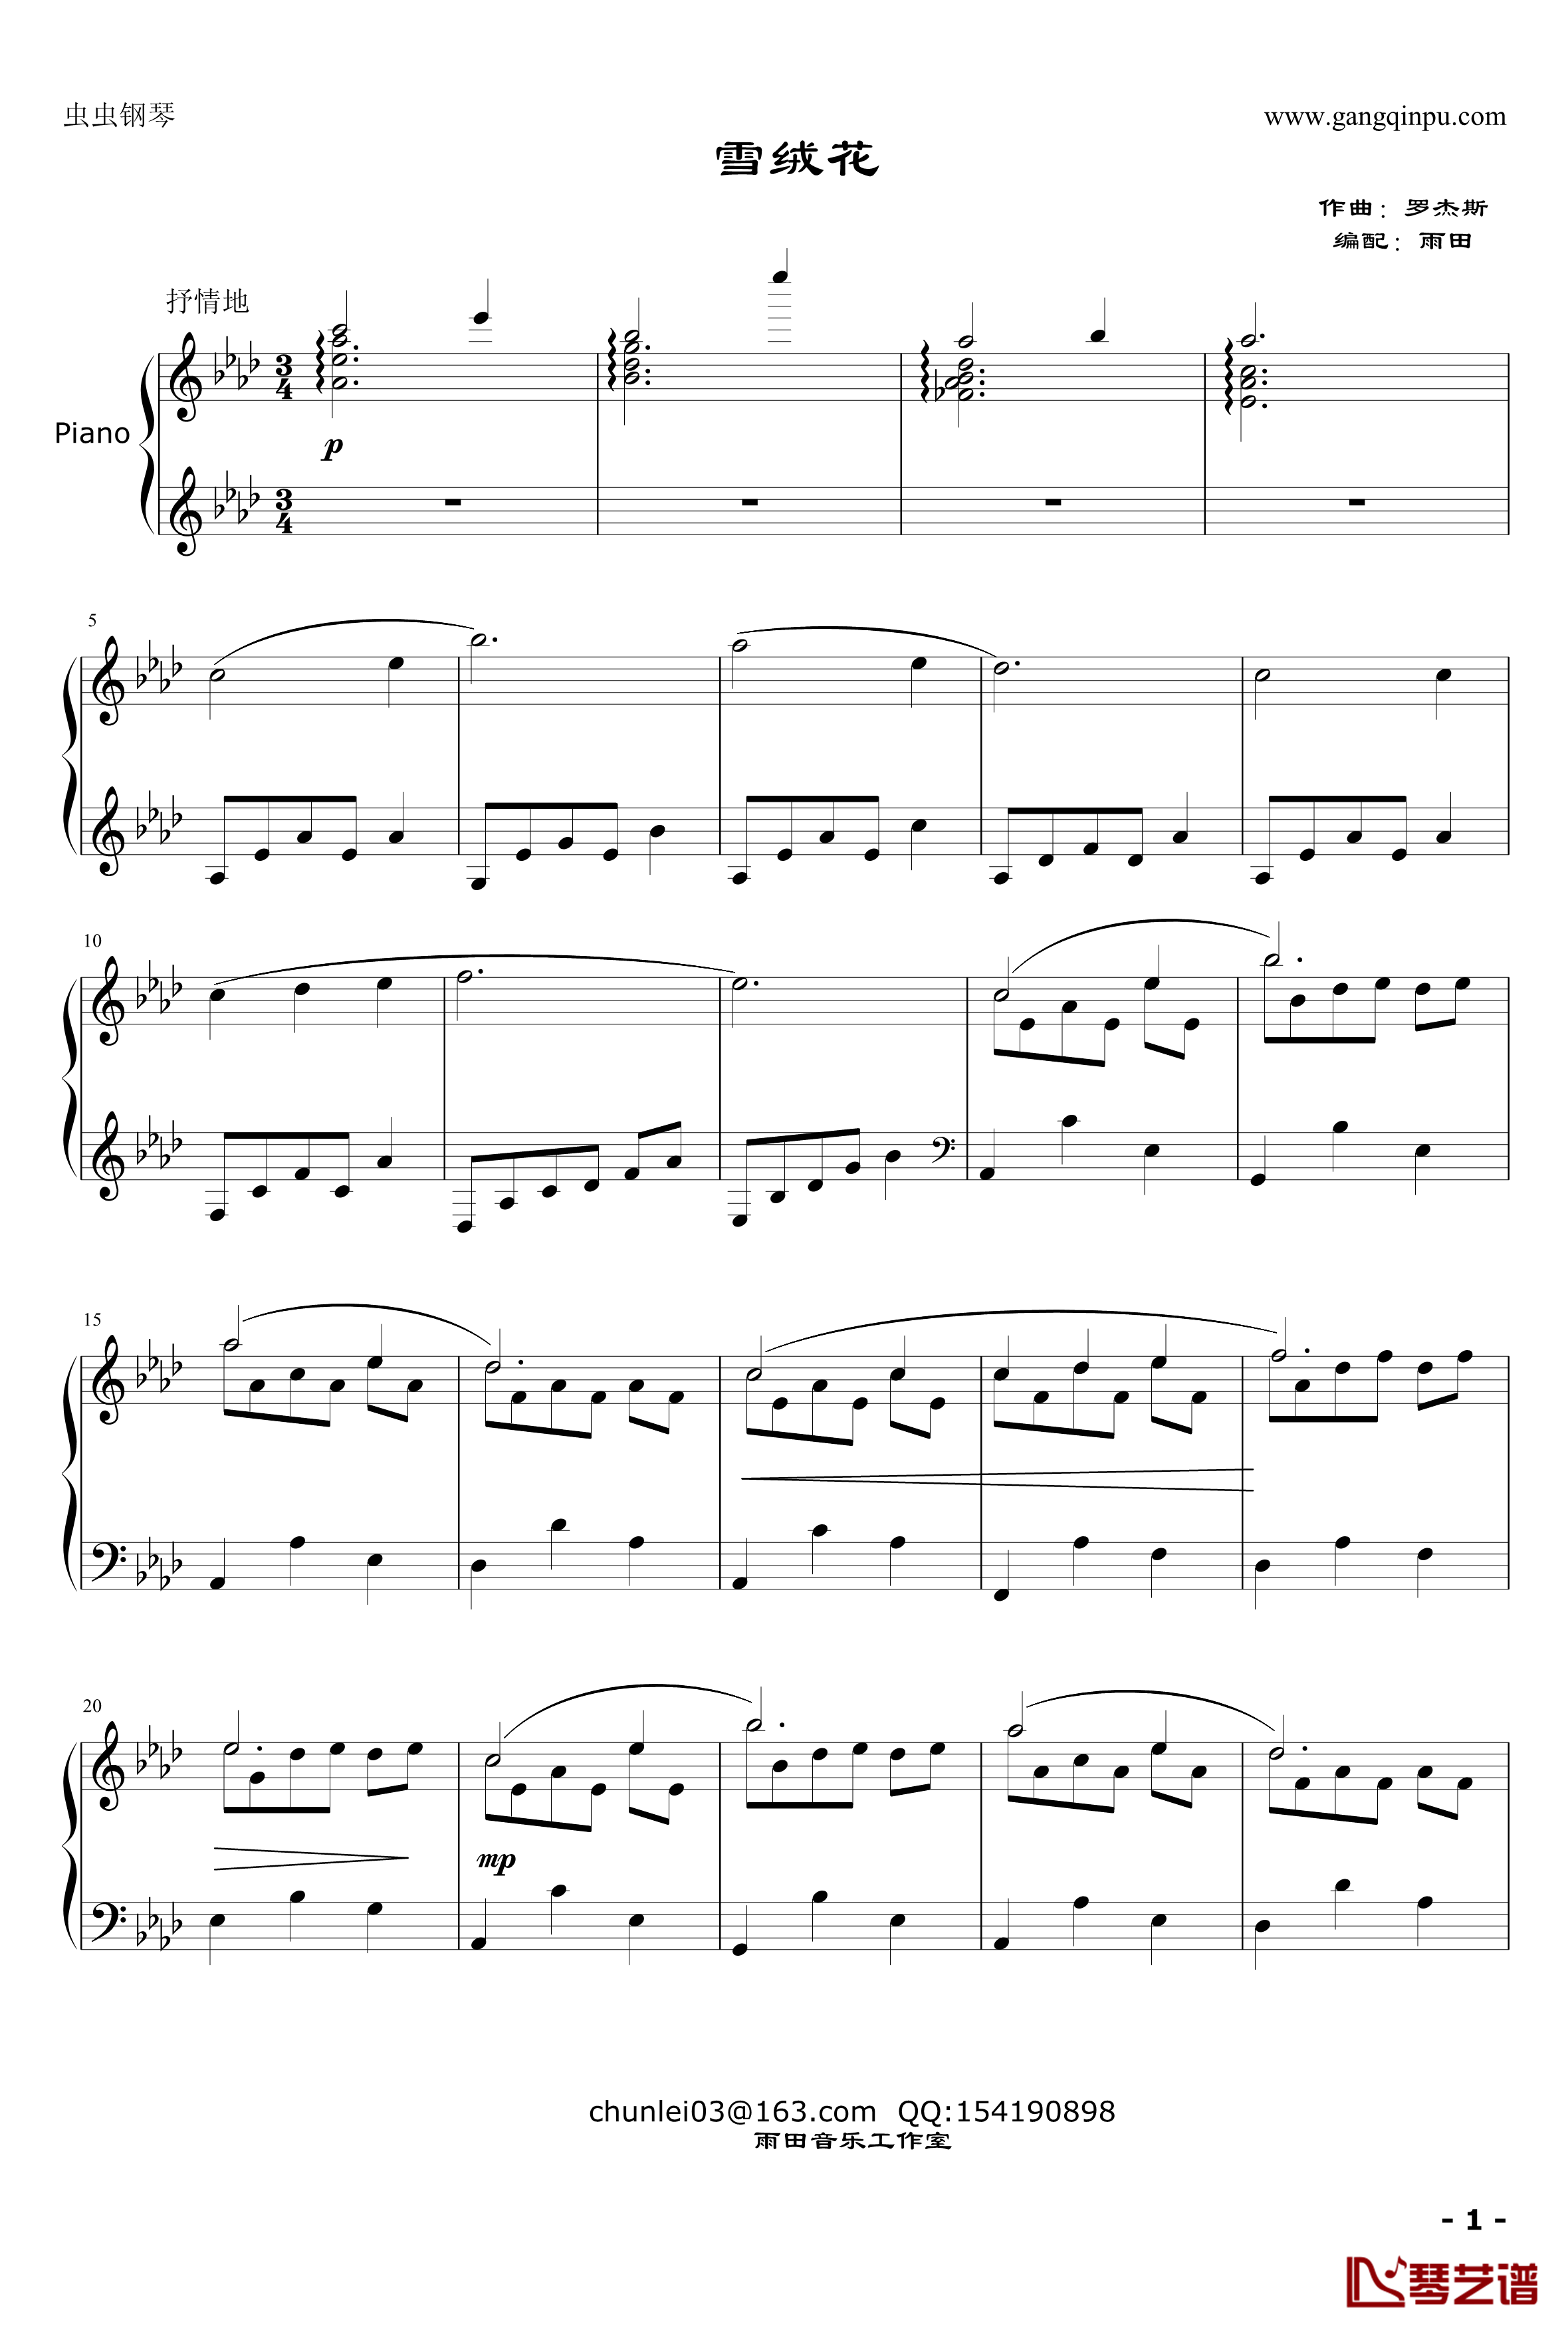 雪绒花钢琴谱-和声优美版-雨田-音乐之声1